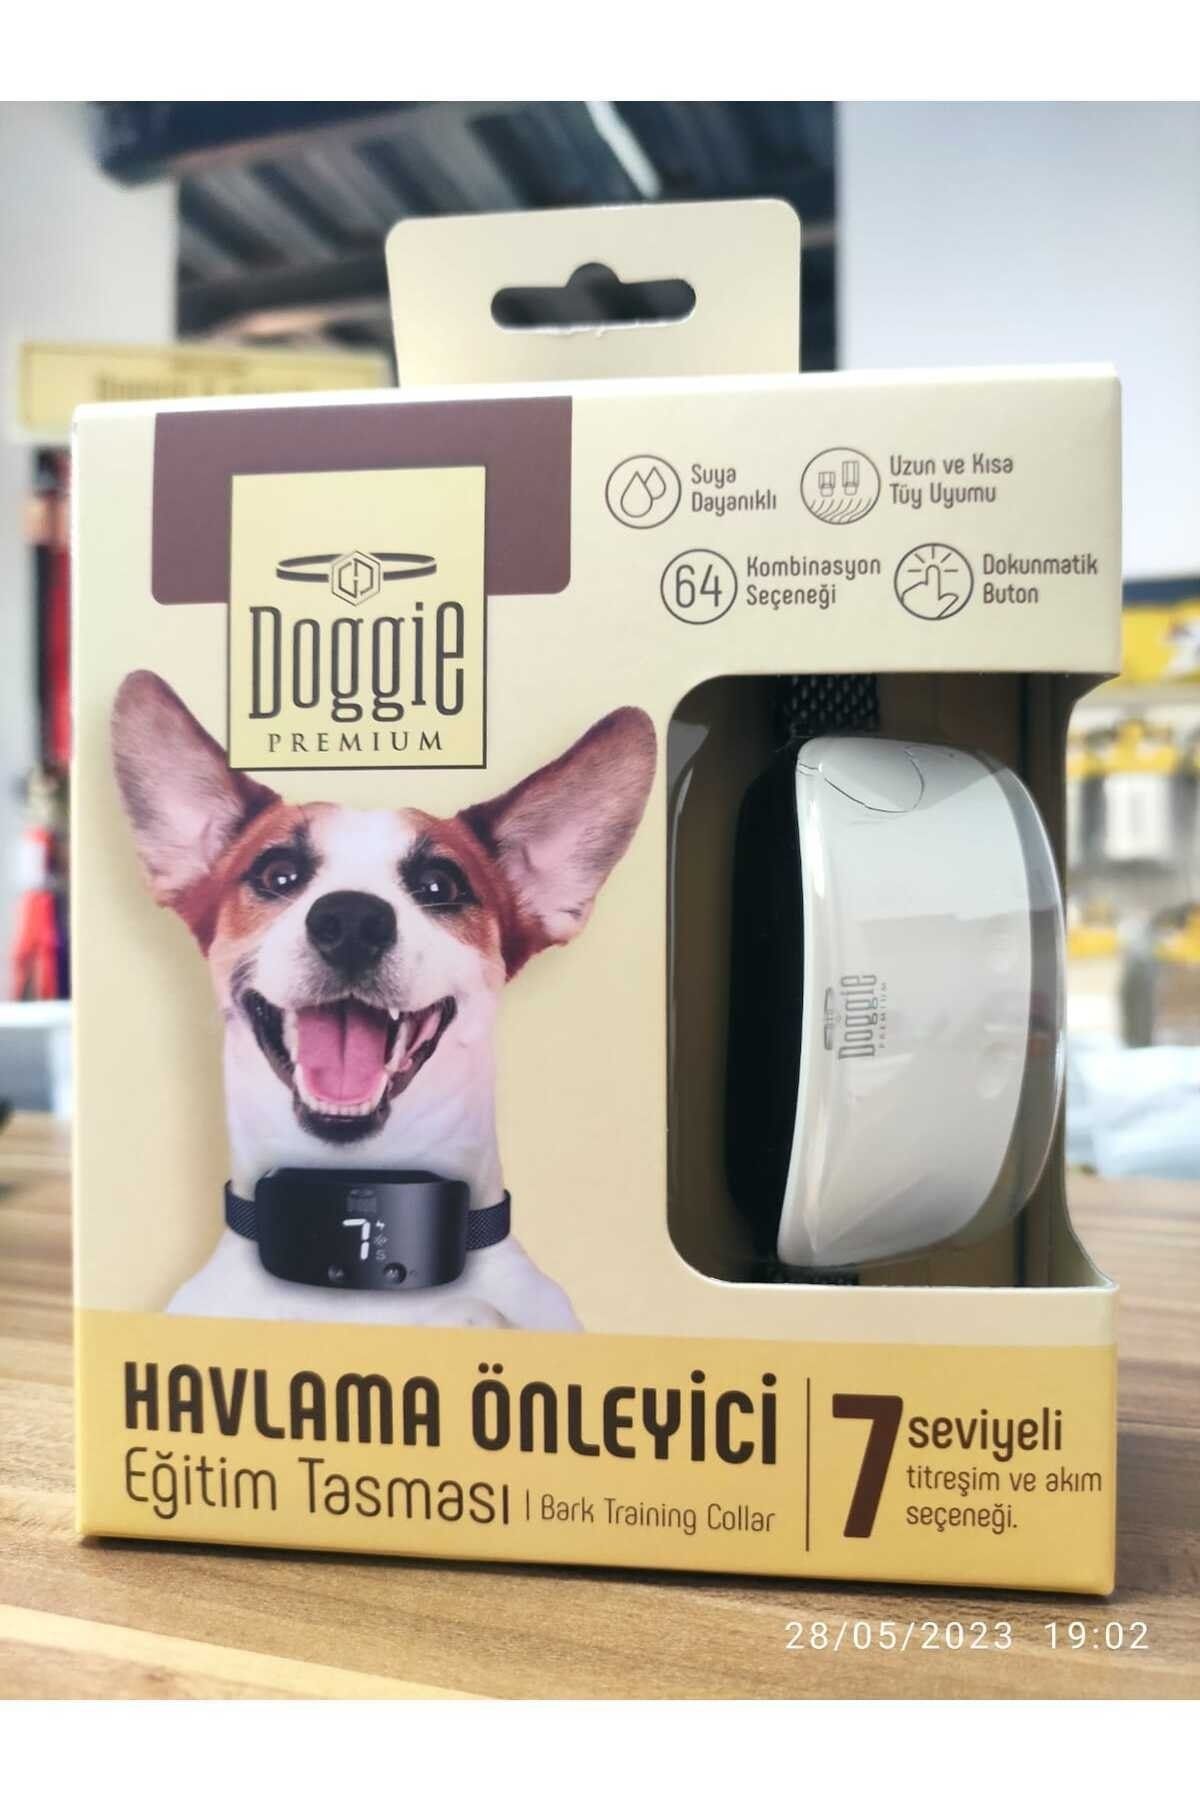 Doggie Havlama Önleyici Eğitim Tasması / Bark Training Collar